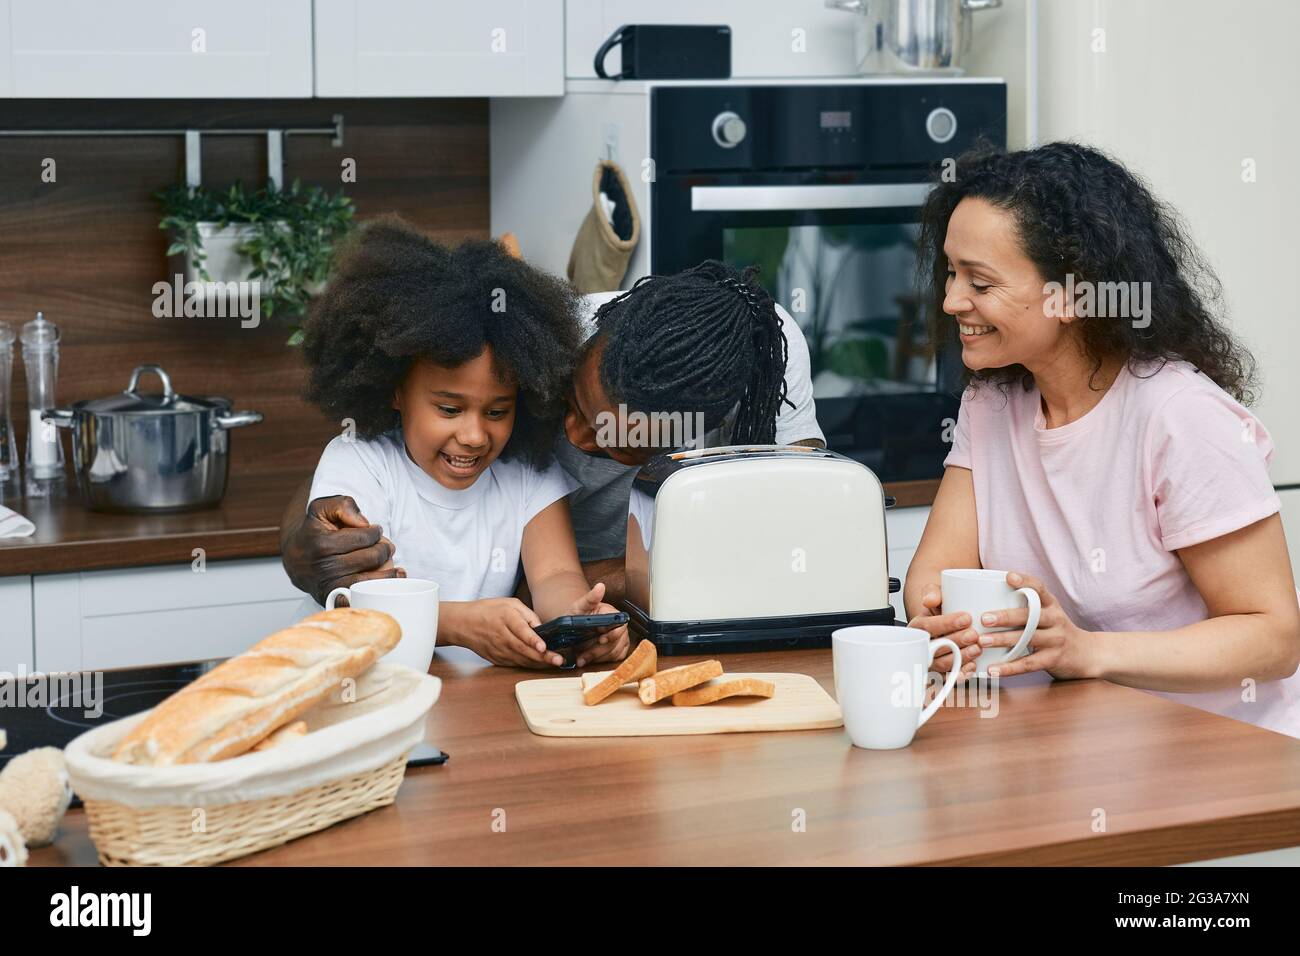 Une famille positive avec un enfant passe du temps ensemble dans une cuisine tout en cuisinant Banque D'Images